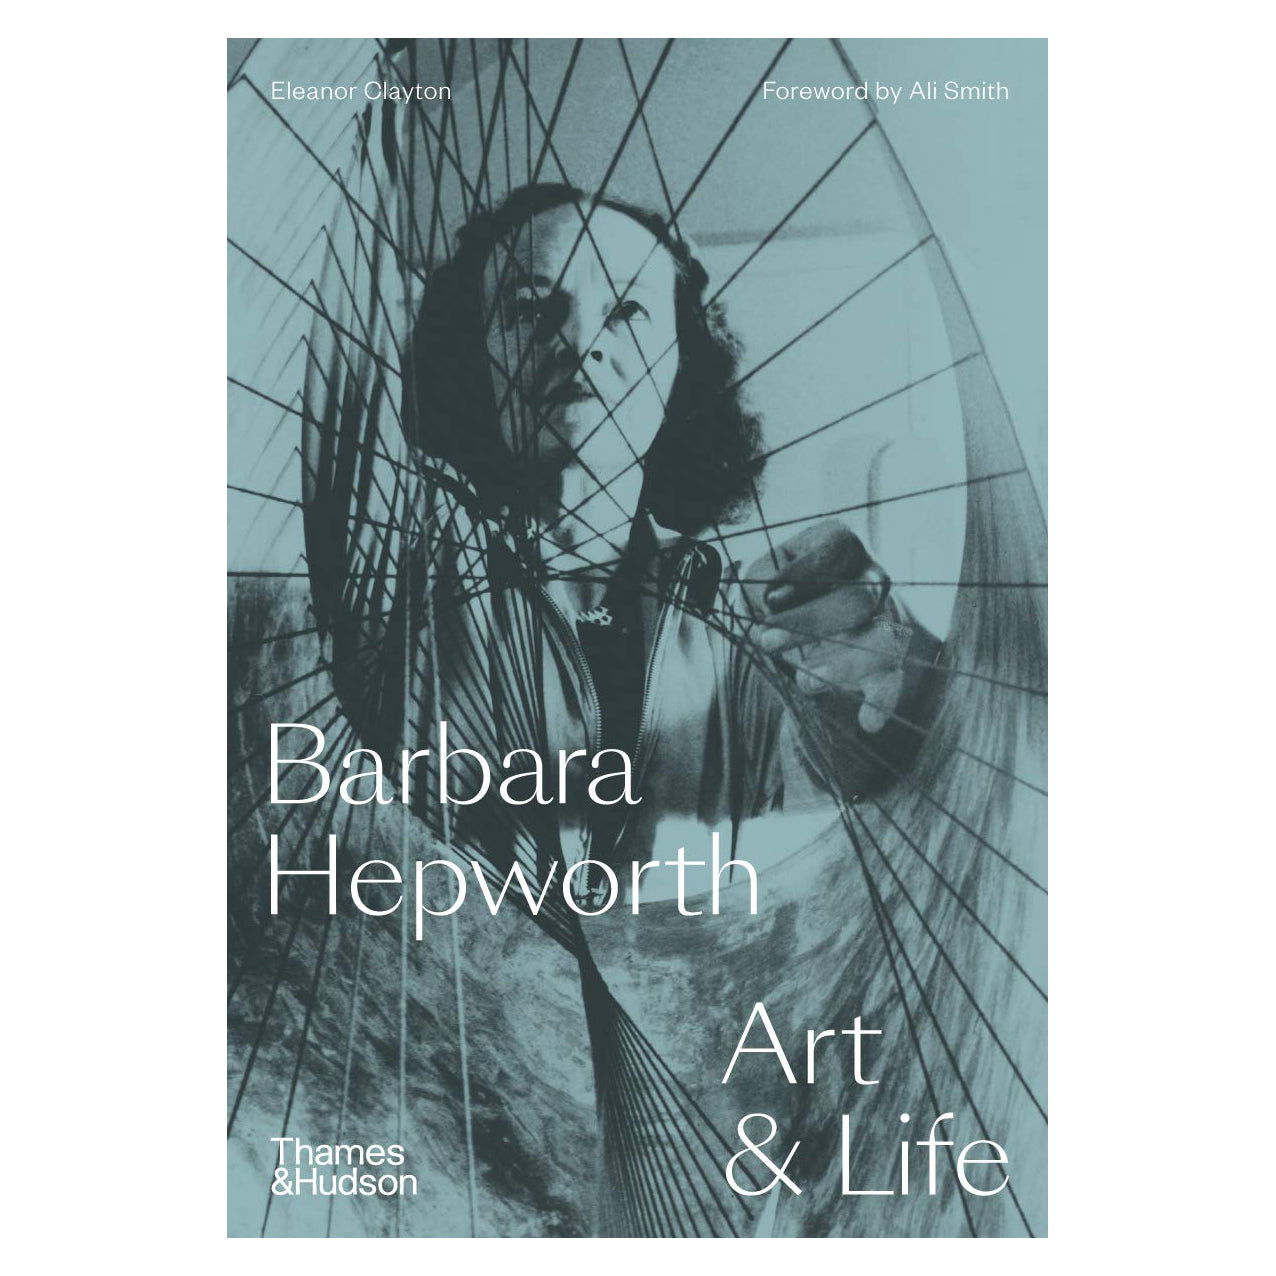 Barbara Hepworth Art & Life